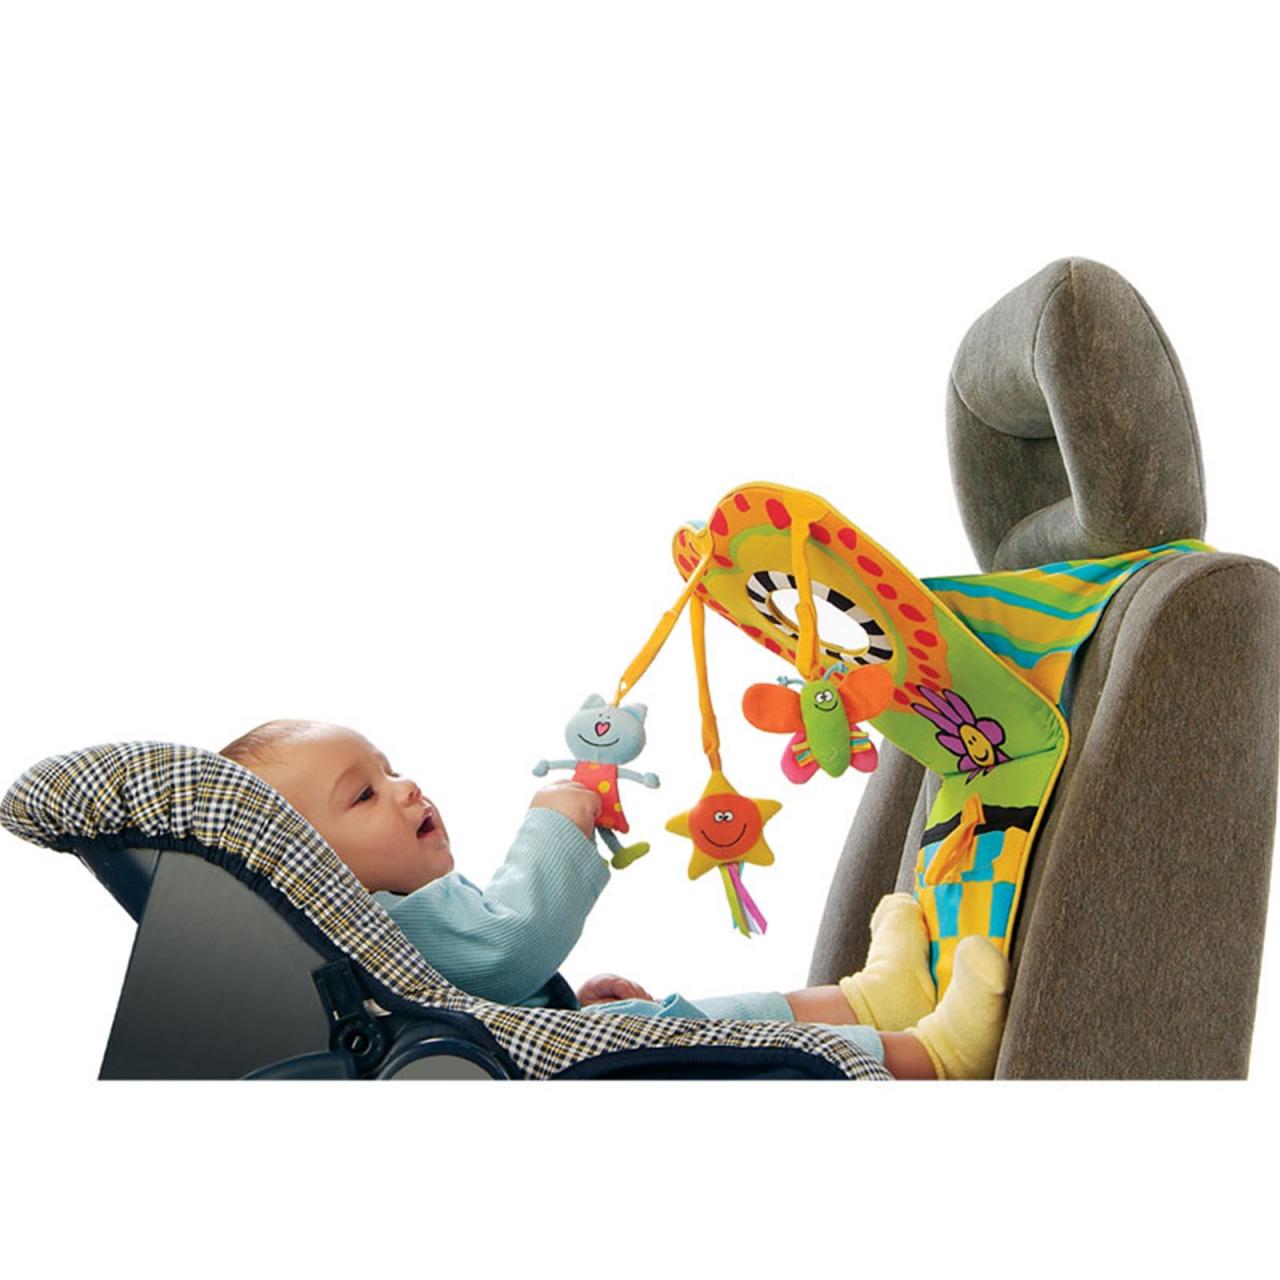 Taf Toys - Toe Time Infant Car Toy - Babyshop.com